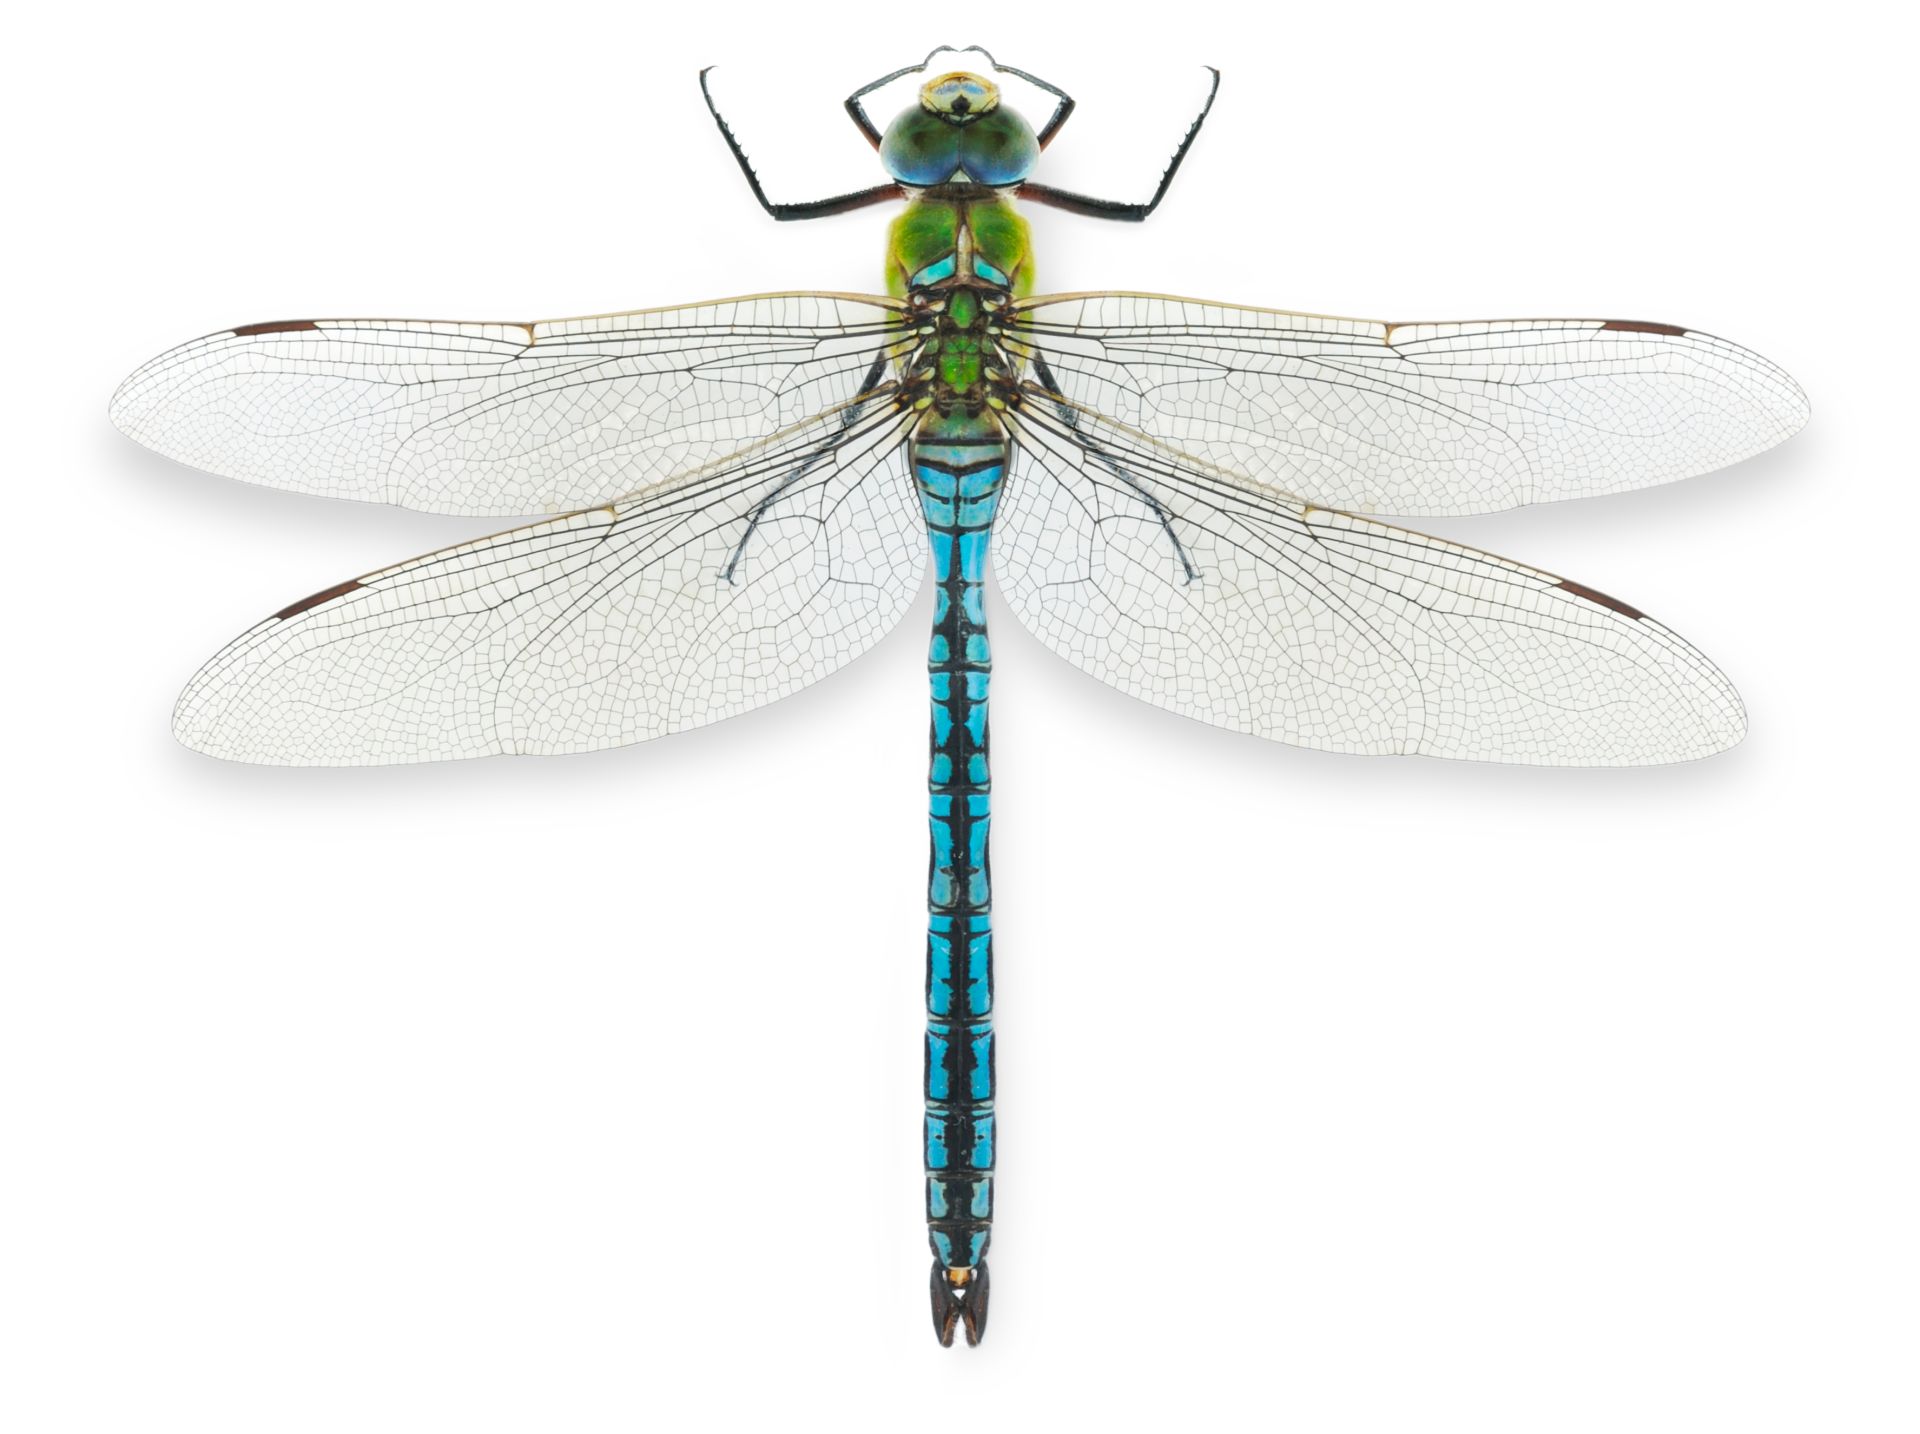 Picture Of Dragonfly - KibrisPDR